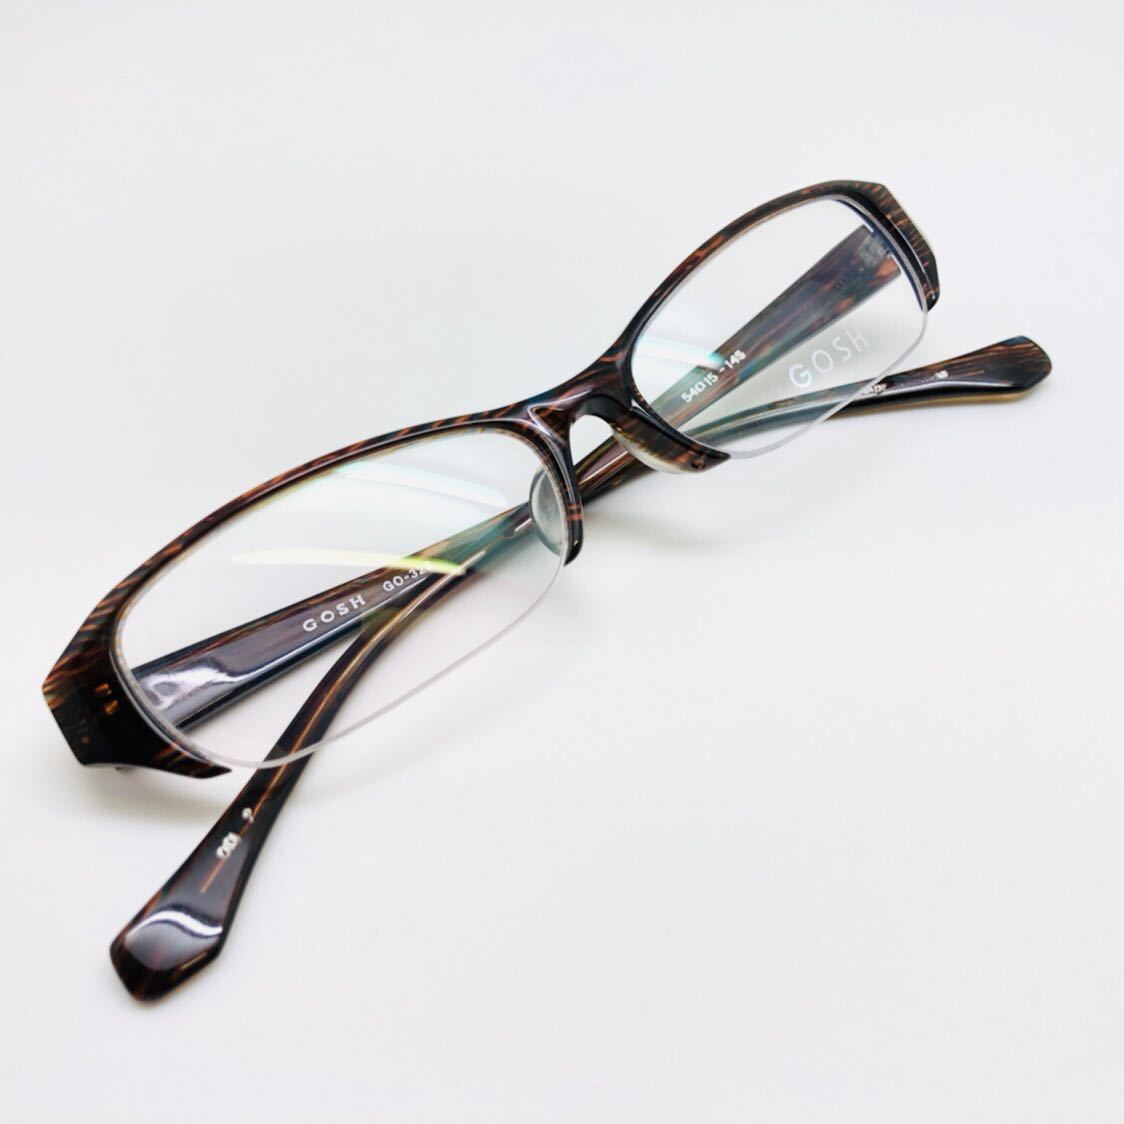 売れ筋がひクリスマスプレゼント オシャレ メガネ 眼鏡 日本製 ブランド ゴッシュ Gosh 新品 上品 かっこいい 綺麗 セルフレーム Www Synt3 Com